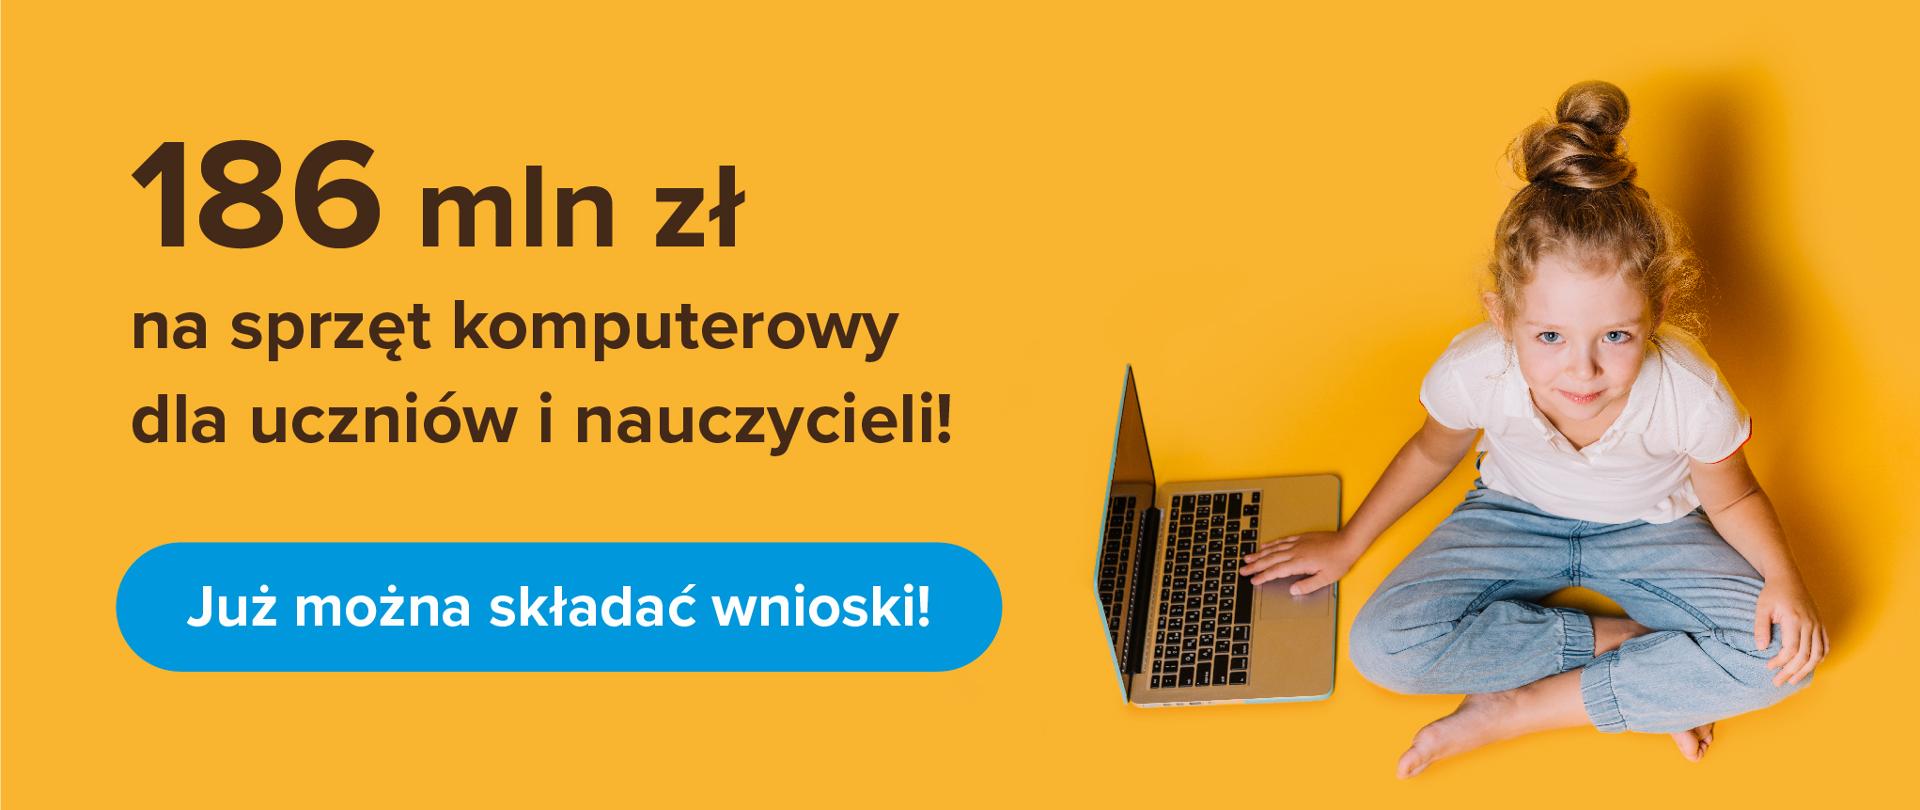 Dziewczynka siedzi z laptopem na żółtym tle. Po lewej stronie napis: 186 mln zł na sprzęt komputerowy dla uczniów i nauczycieli! Już można składać wnioski!